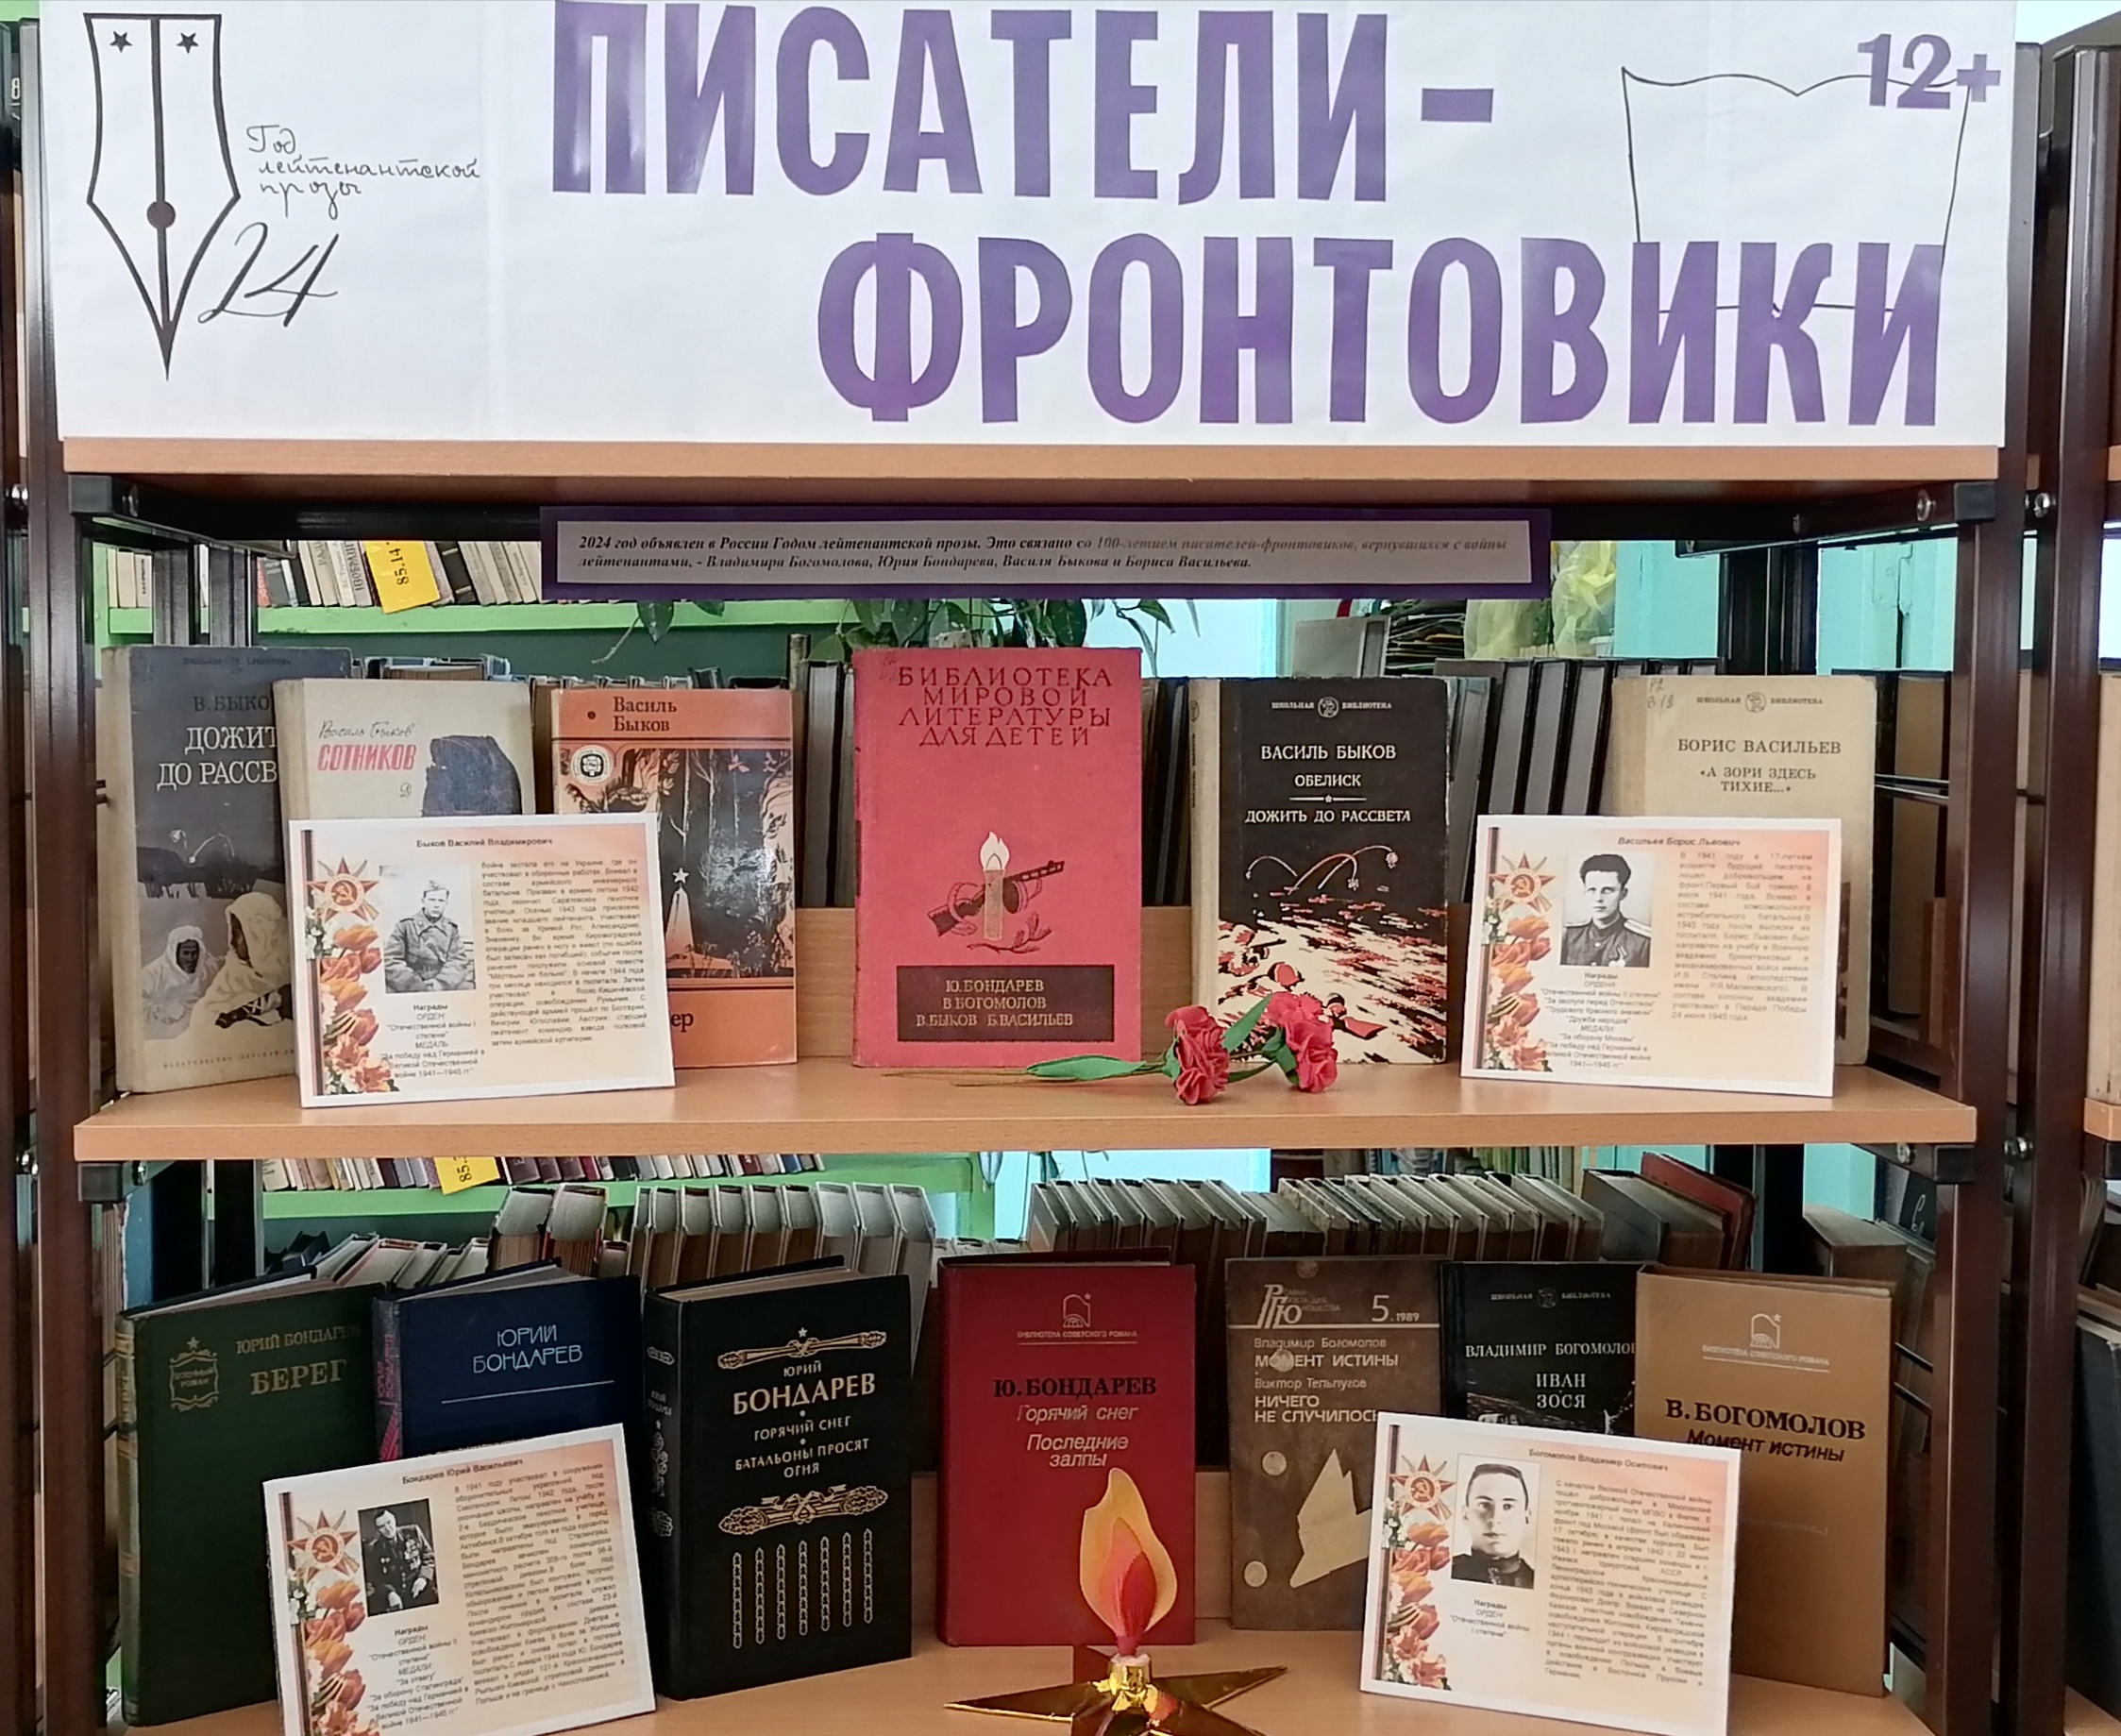 В рамках празднования 79-летней годовщины Победы в Великой Отечественной войне, в библиотеке МКОУ СОШ № 9 для читателей оформлены книжные выставки и проведены массовые мероприятия.